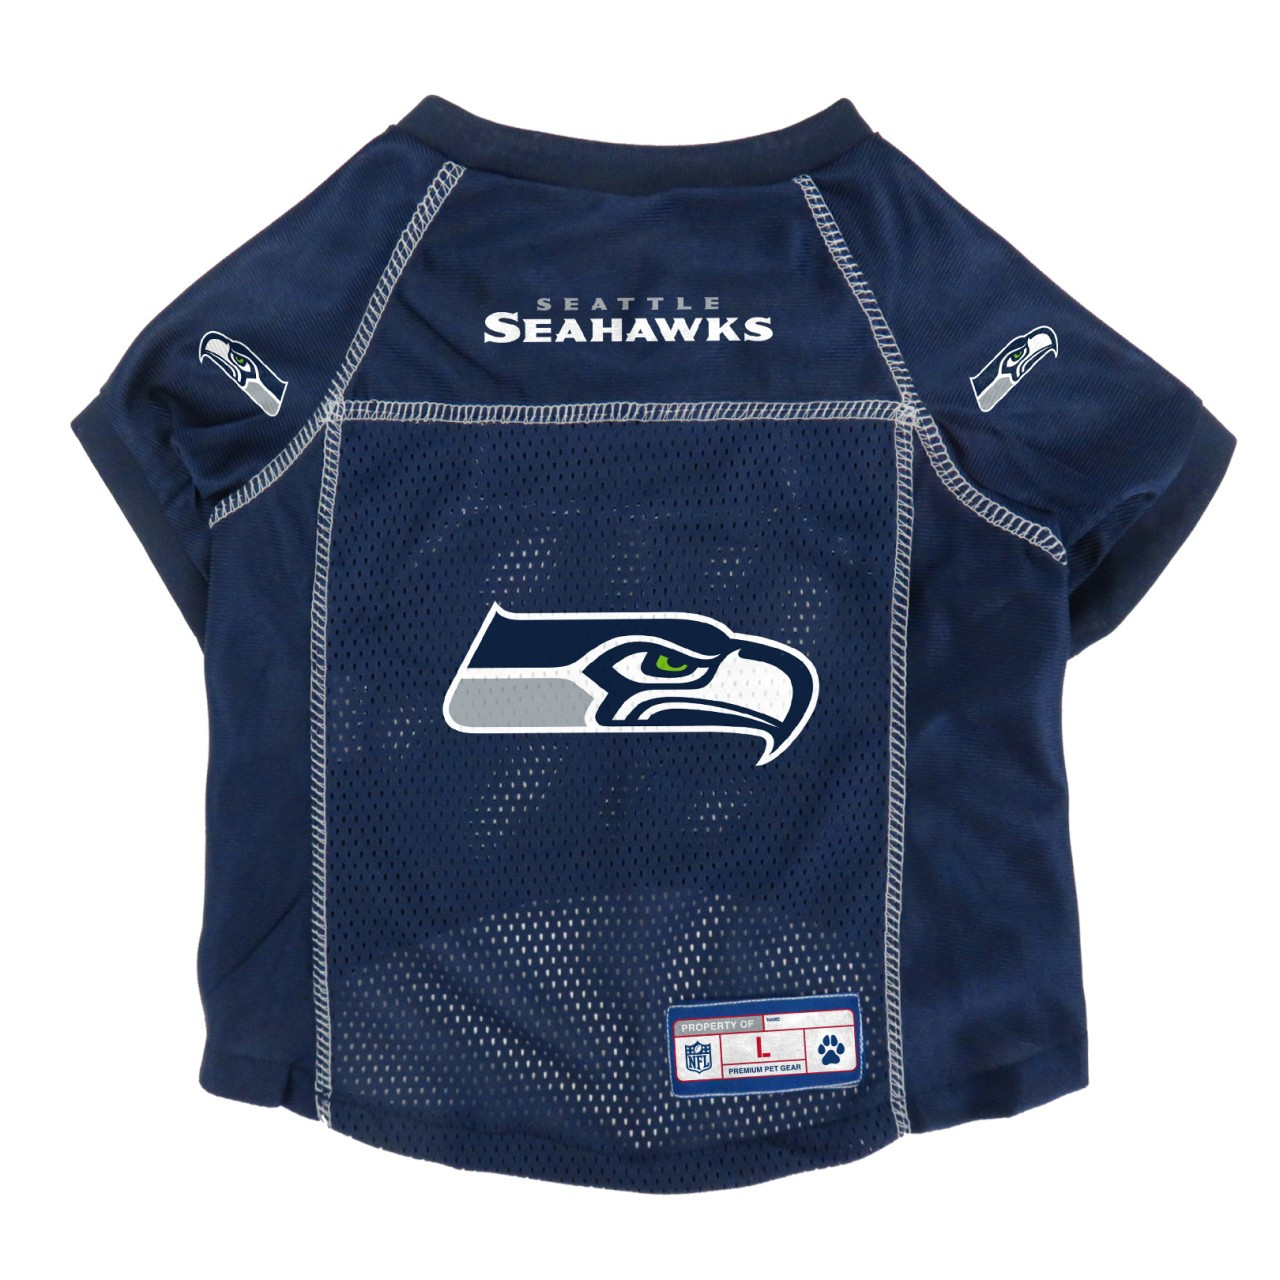 buy seattle seahawks jersey